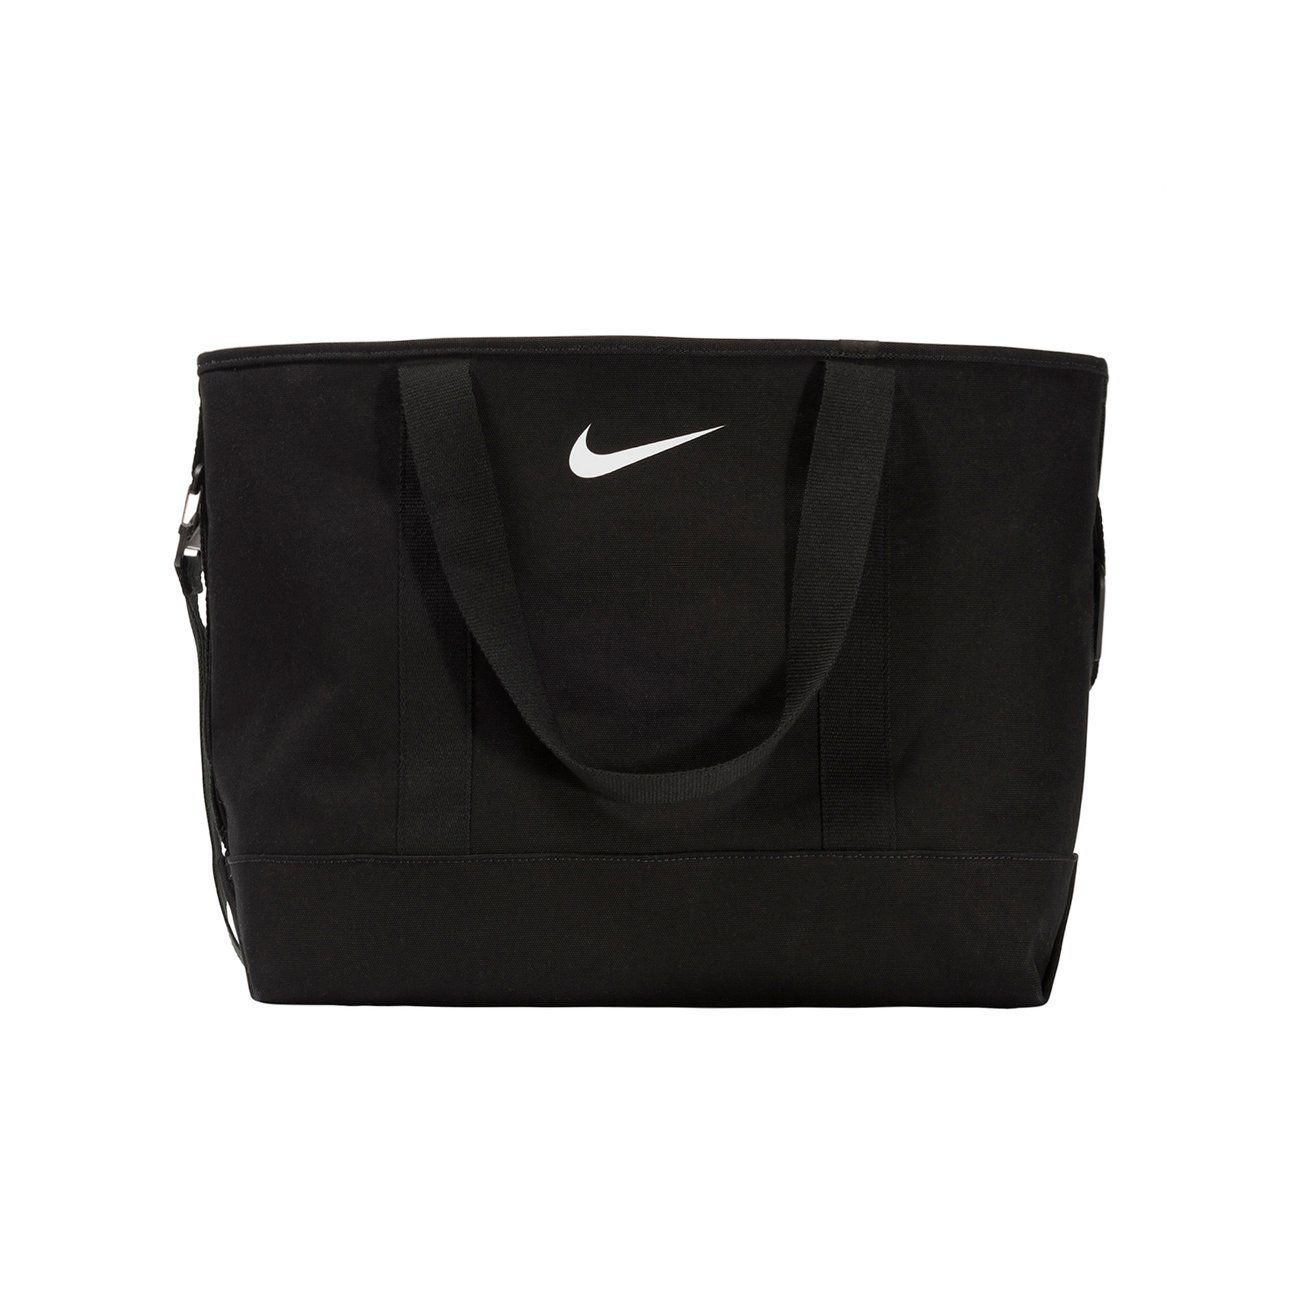 【総合評価】Stussy Nike Tote Bag (Black) トートバッグ